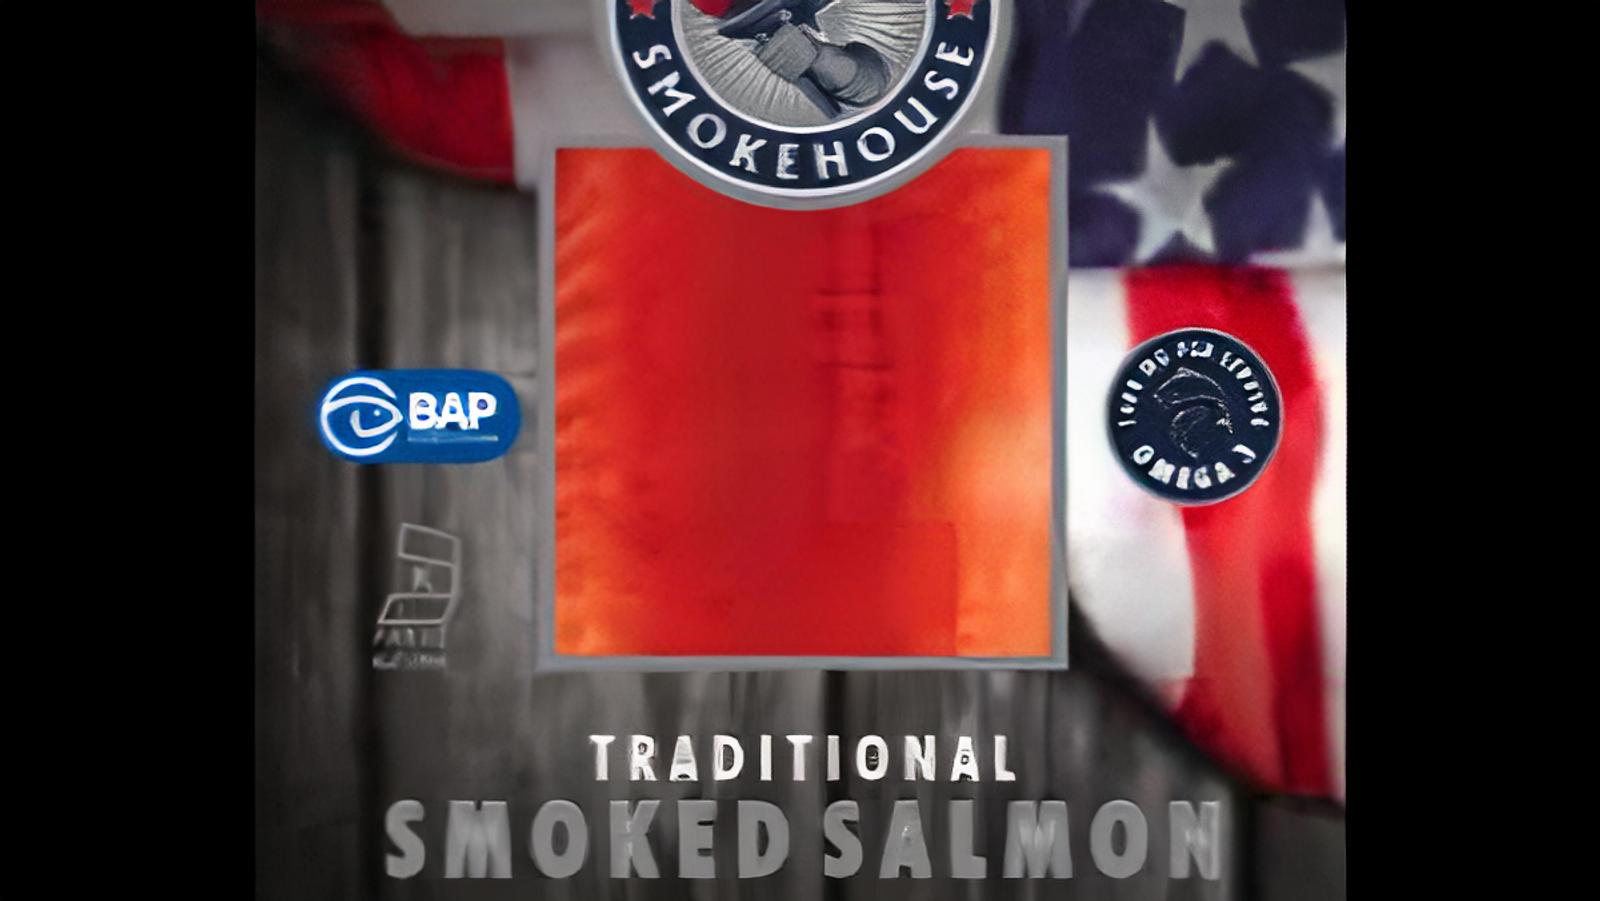 Traditionally Smoked 4oz Salmon, 3 Packs